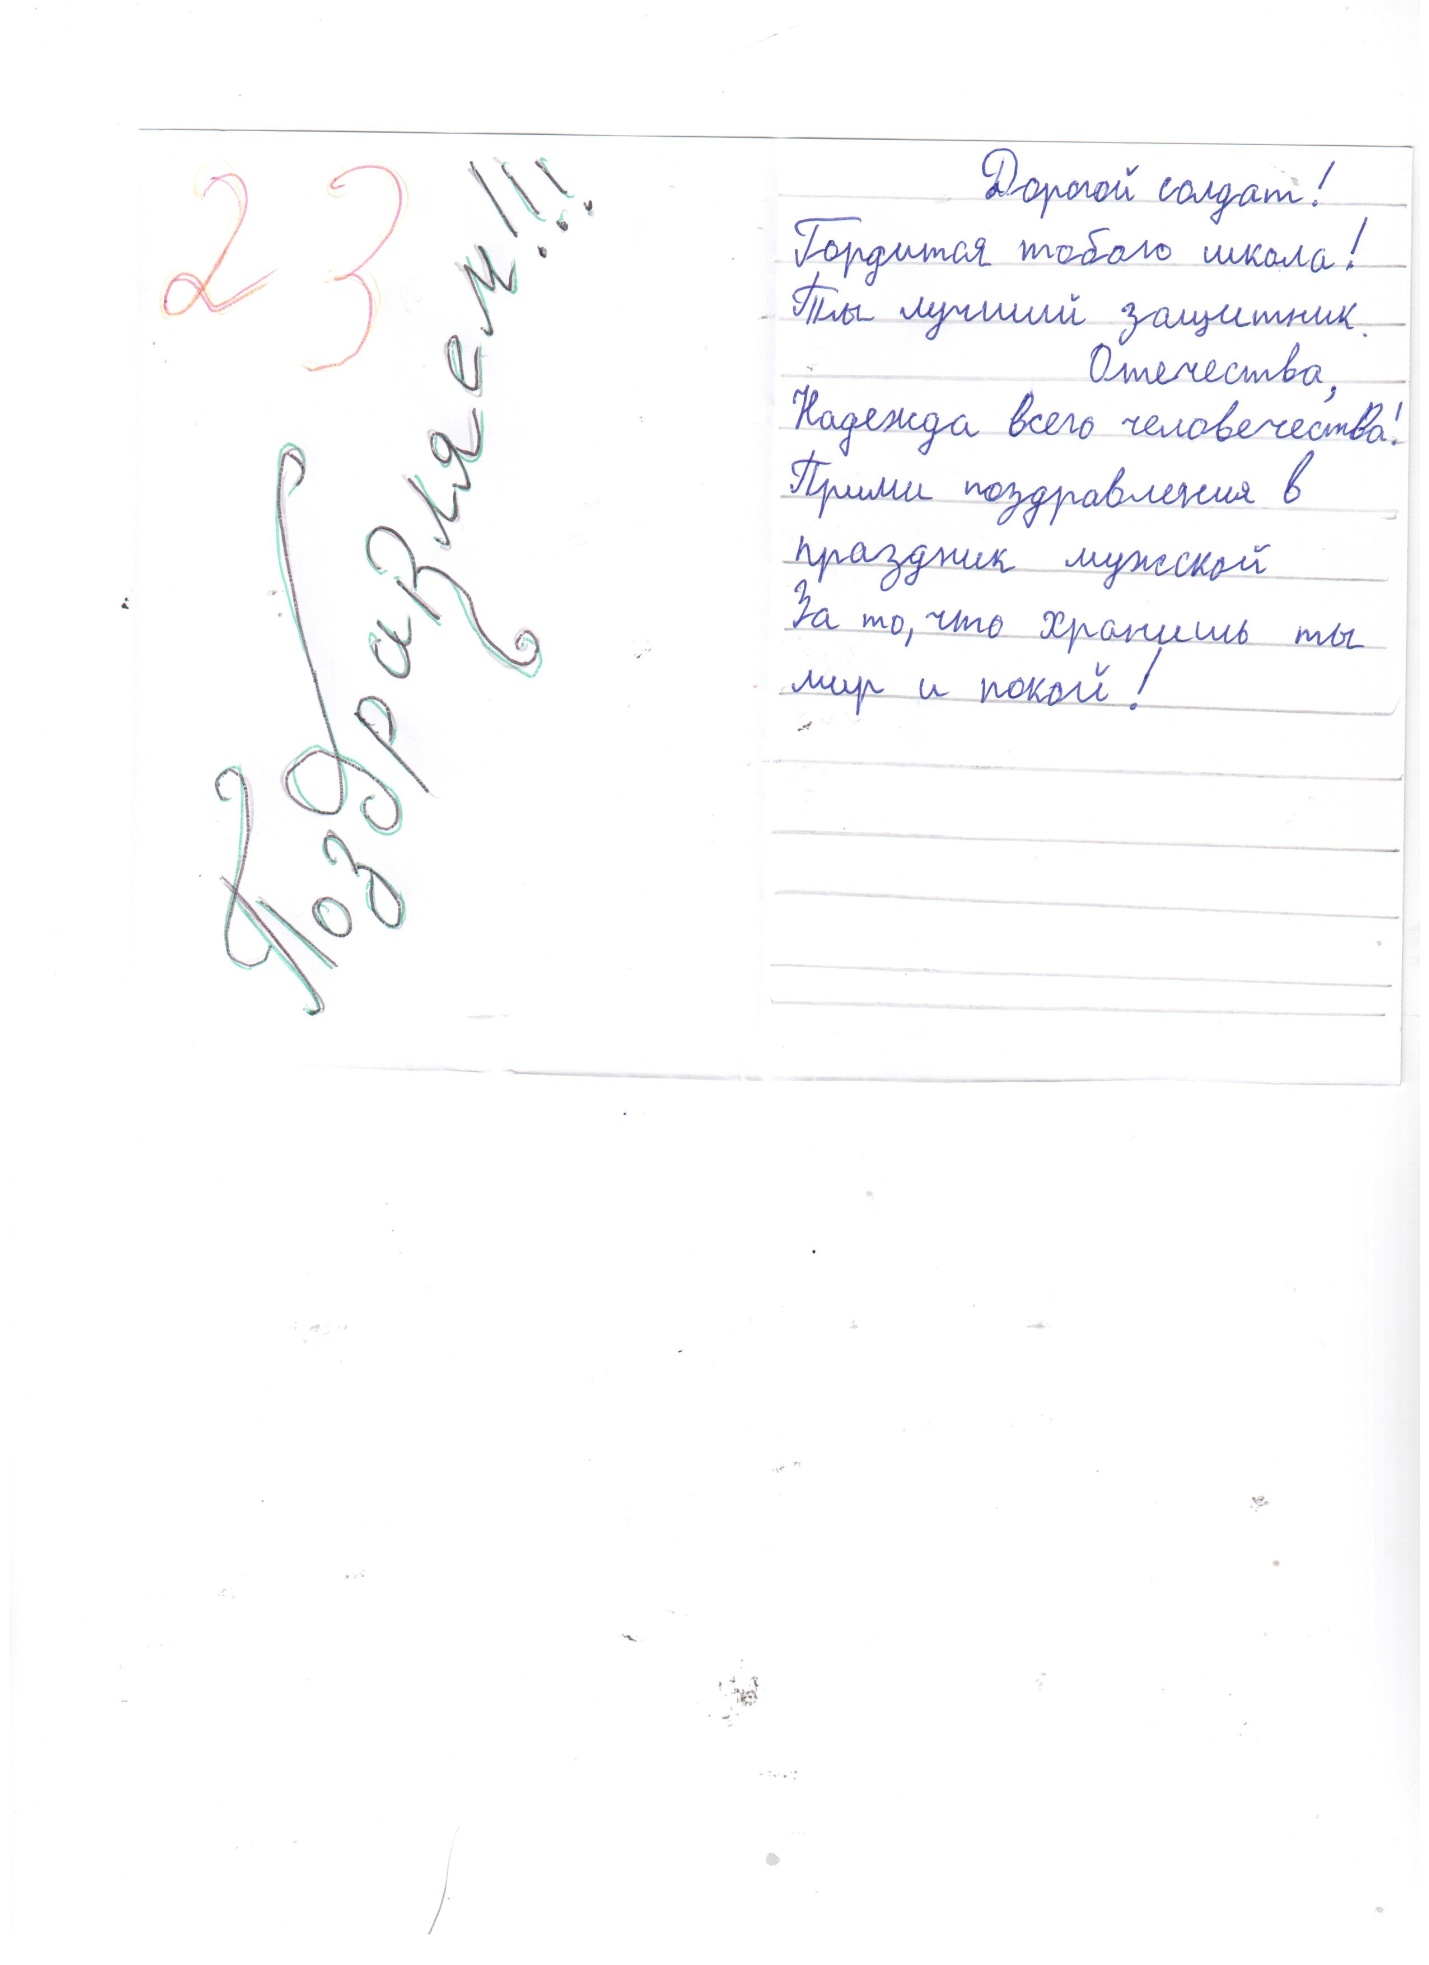 Социально-значимый (патриотический) проект «Письмо солдату Российской Армии и поздравление с Днем защитника Отечества»